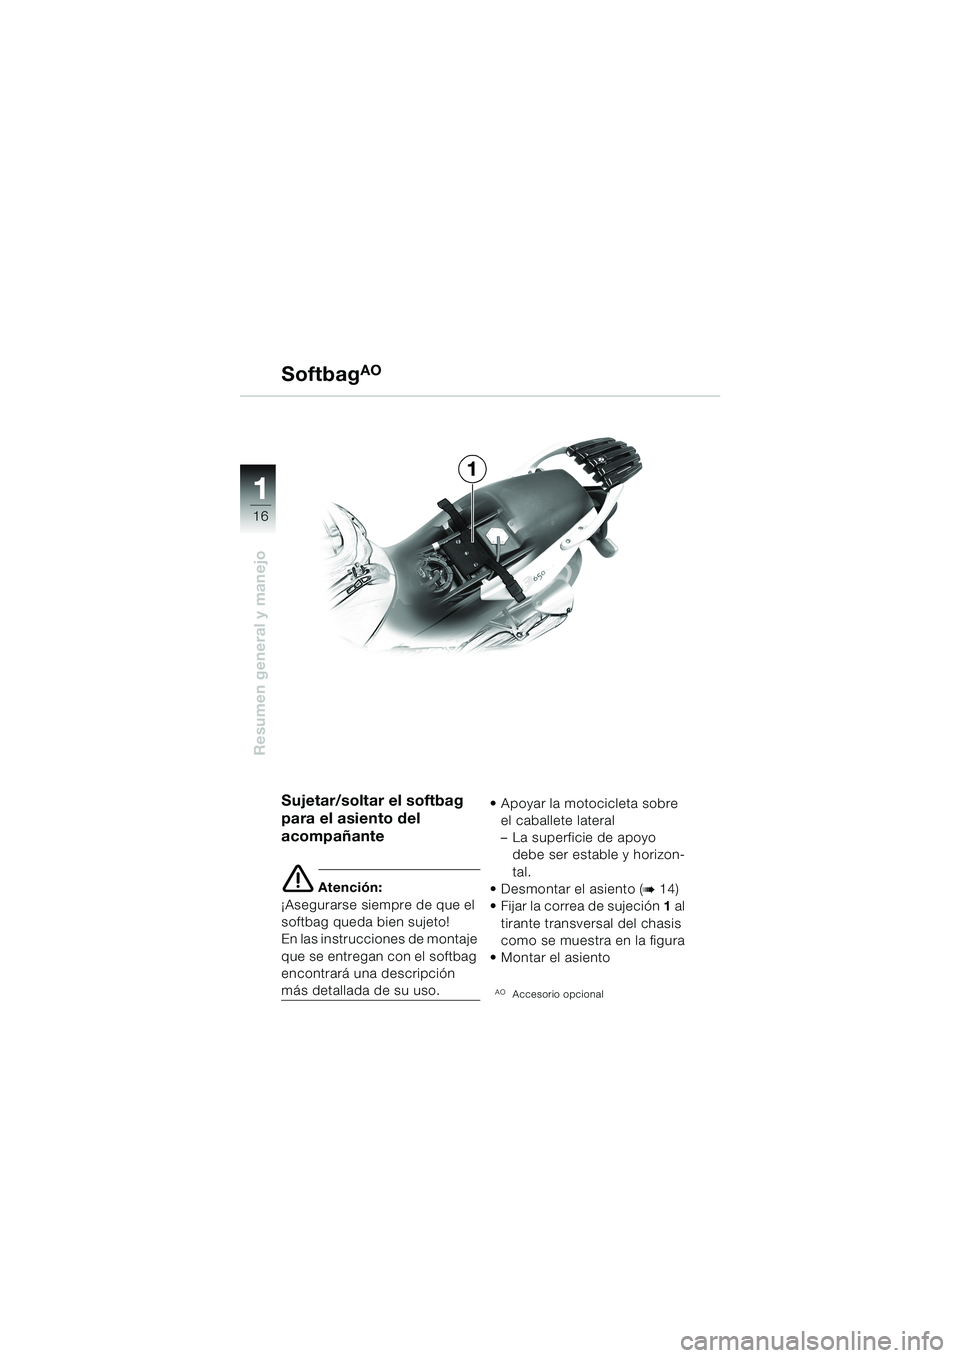 BMW MOTORRAD F 650 CS 2003  Manual de instrucciones (in Spanish) 1 1
16
Resumen general y manejo
1 Softbag
AO
Sujetar/soltar el softbag 
para el asiento del 
acompañante
e Atención:
¡Asegurarse siempre de que el 
softbag queda bien sujeto!
En las instrucciones d